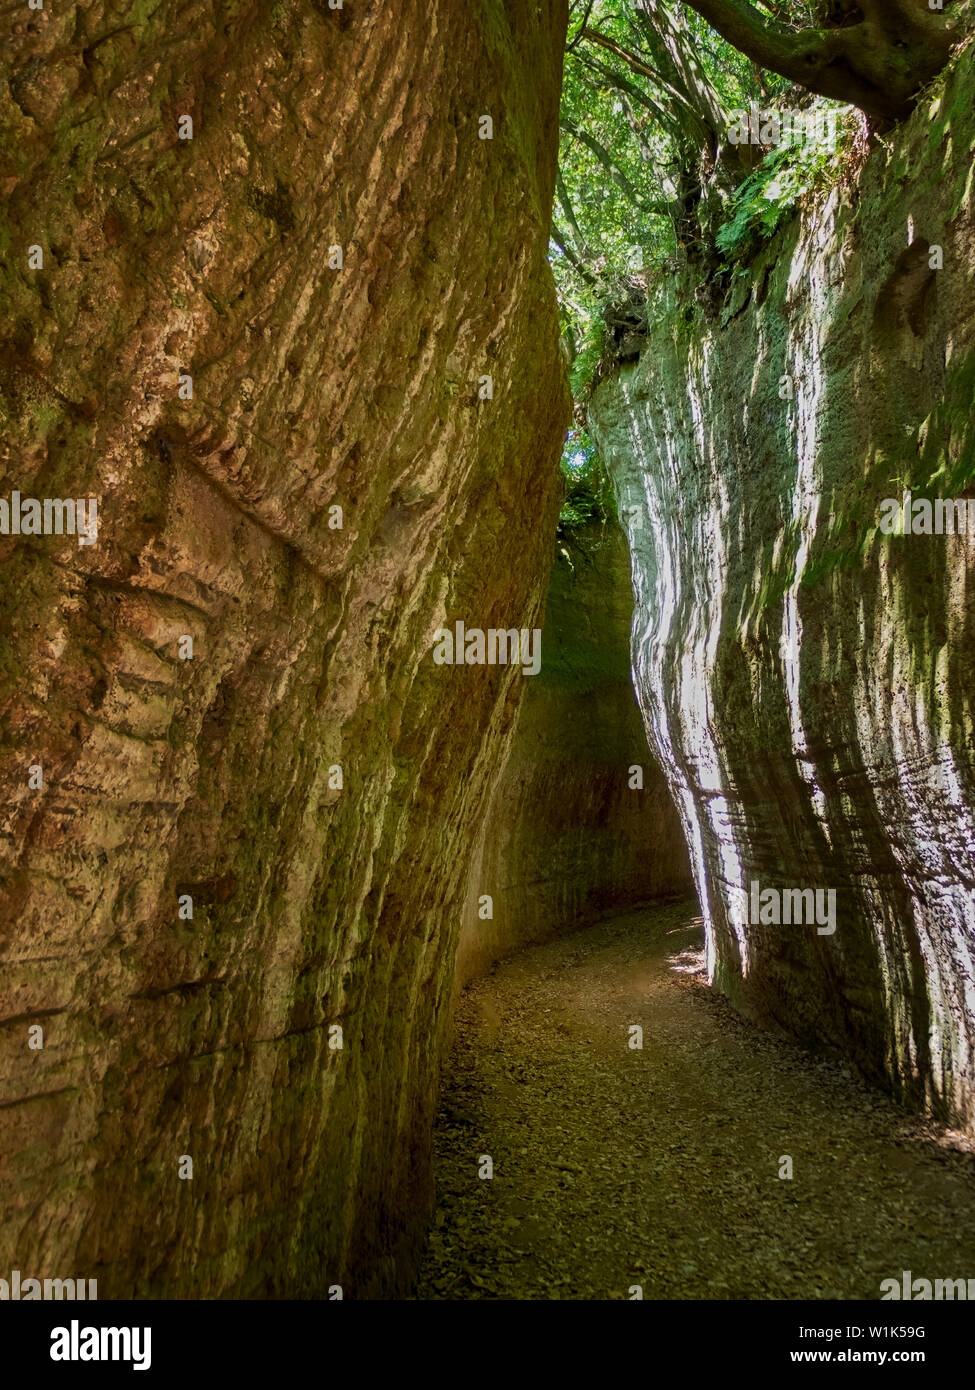 SOVANA, Toskana, Italien - 16. Juni 2019 über Cava, Höhle ie tiefen Schnitt Pfade von etruskischen Zivilisation durch Tuffstein erstellt, Sovana in der Maremma, Italien Stockfoto